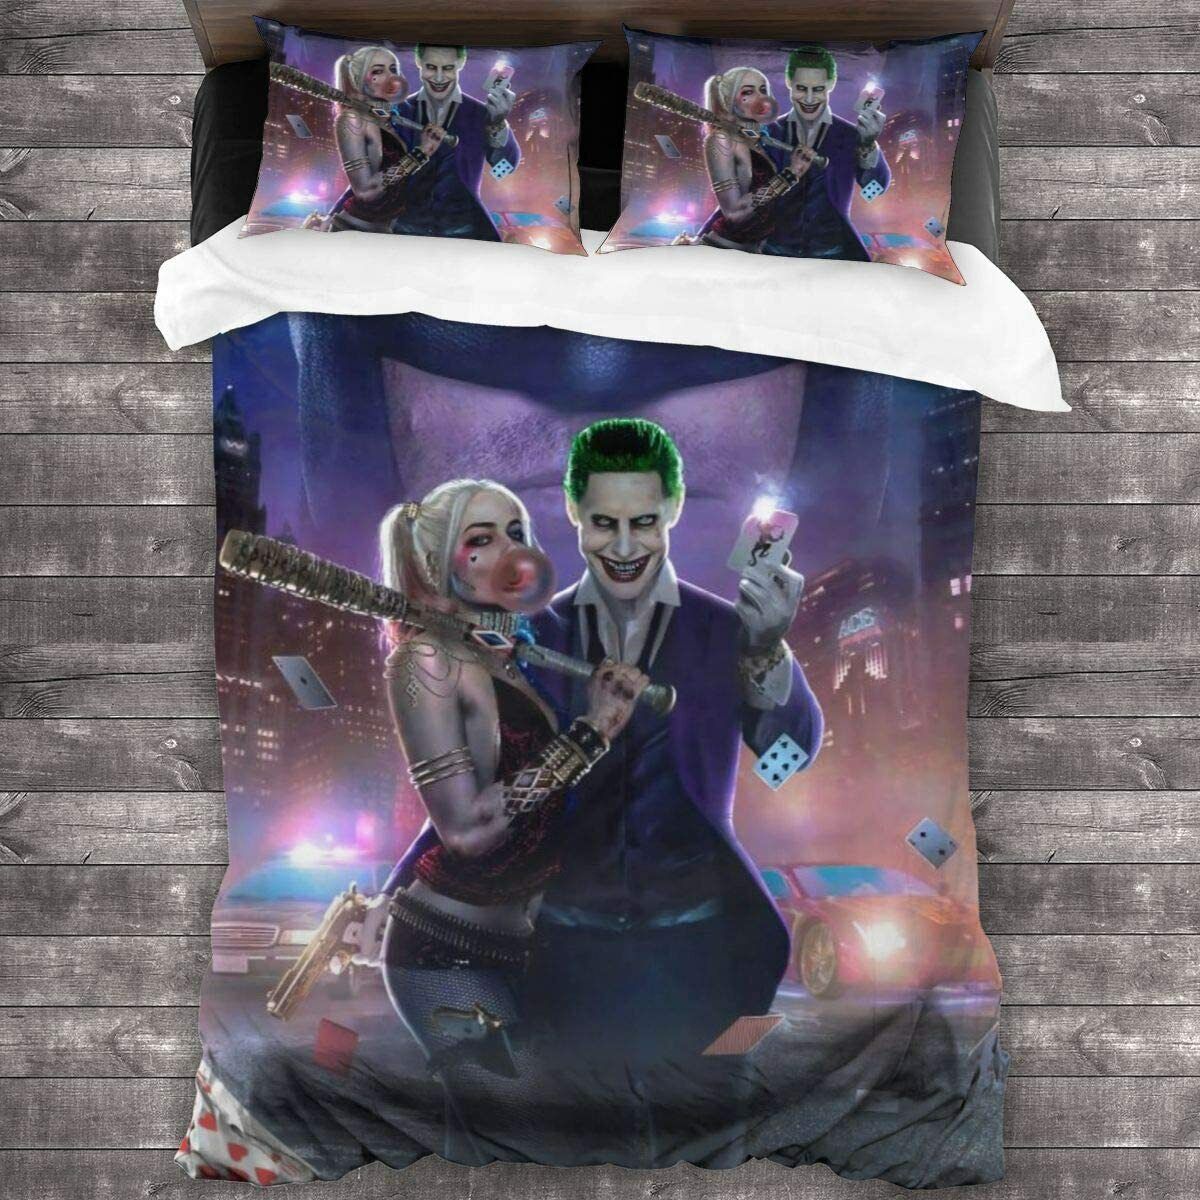 Joker & Harley Quinn 3PCS Bedding Set Duvet Cover Pillowcases Comforter Cover Ograniczona sprzedaż, tanio